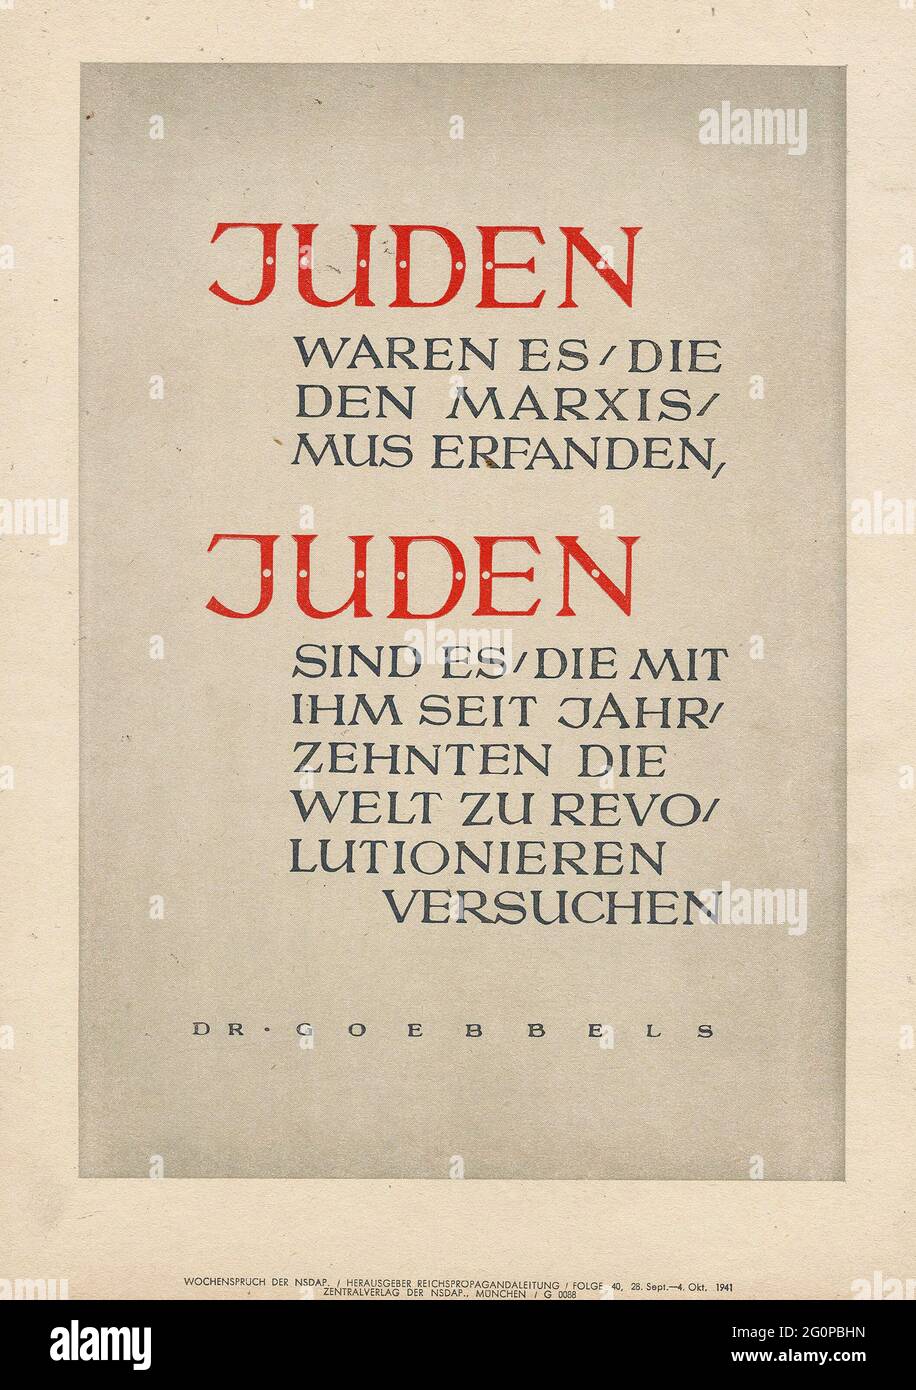 Une affiche de propagande nazie vintage avec une citation de Joseph Goebbels reliant les Juifs et le communisme Banque D'Images